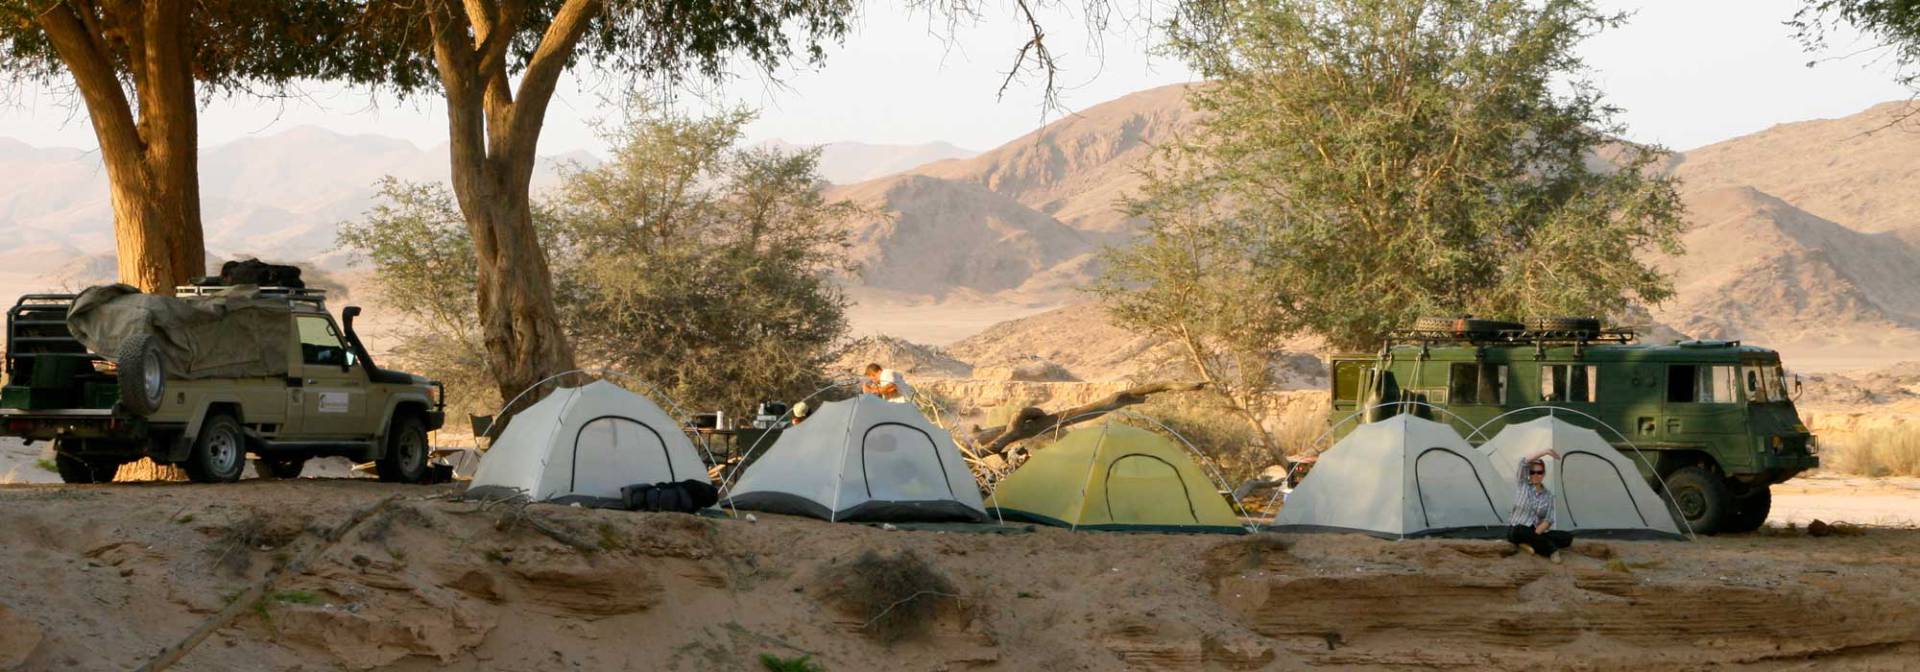 Damaraland Campingtour mit Outdoor Adventure Safaris